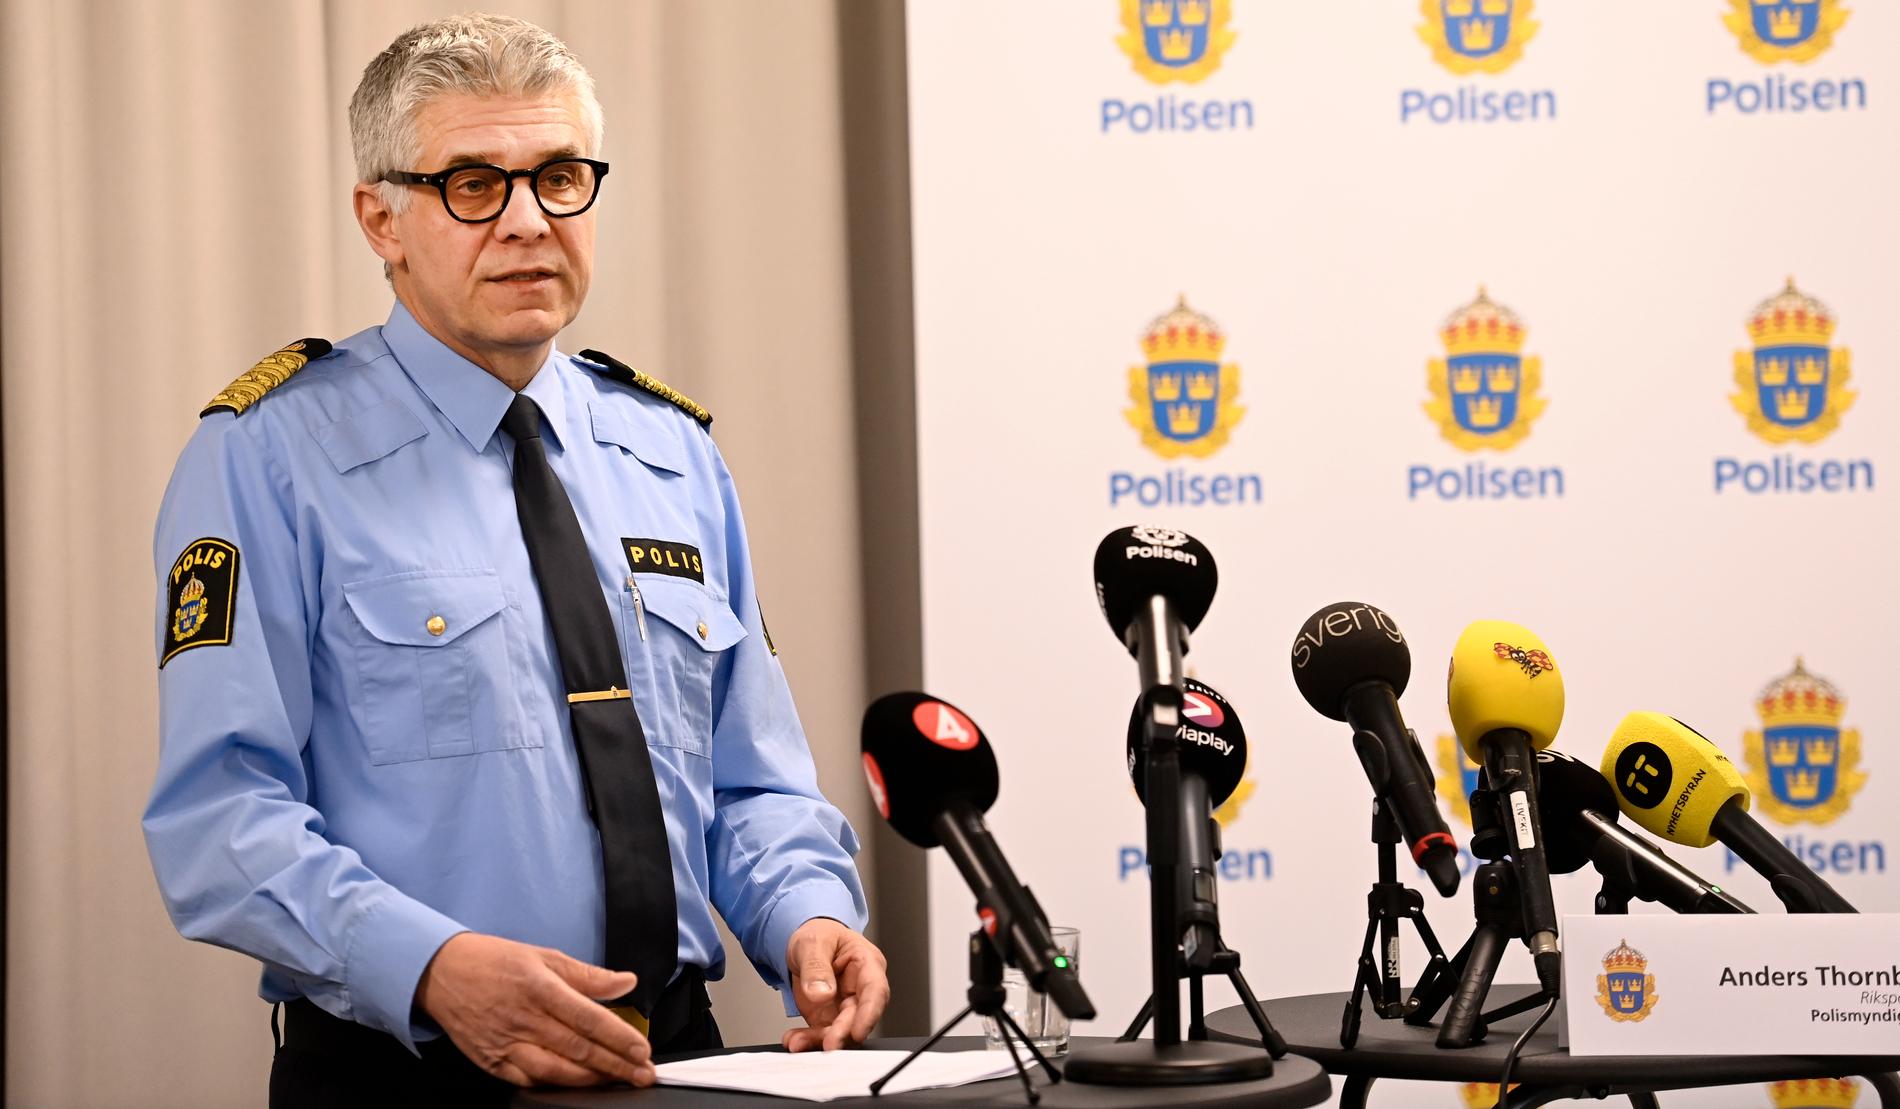 Rikspolischef Anders Thornberg kommenterar rapporten om Mats Löfving på en presskonferens.